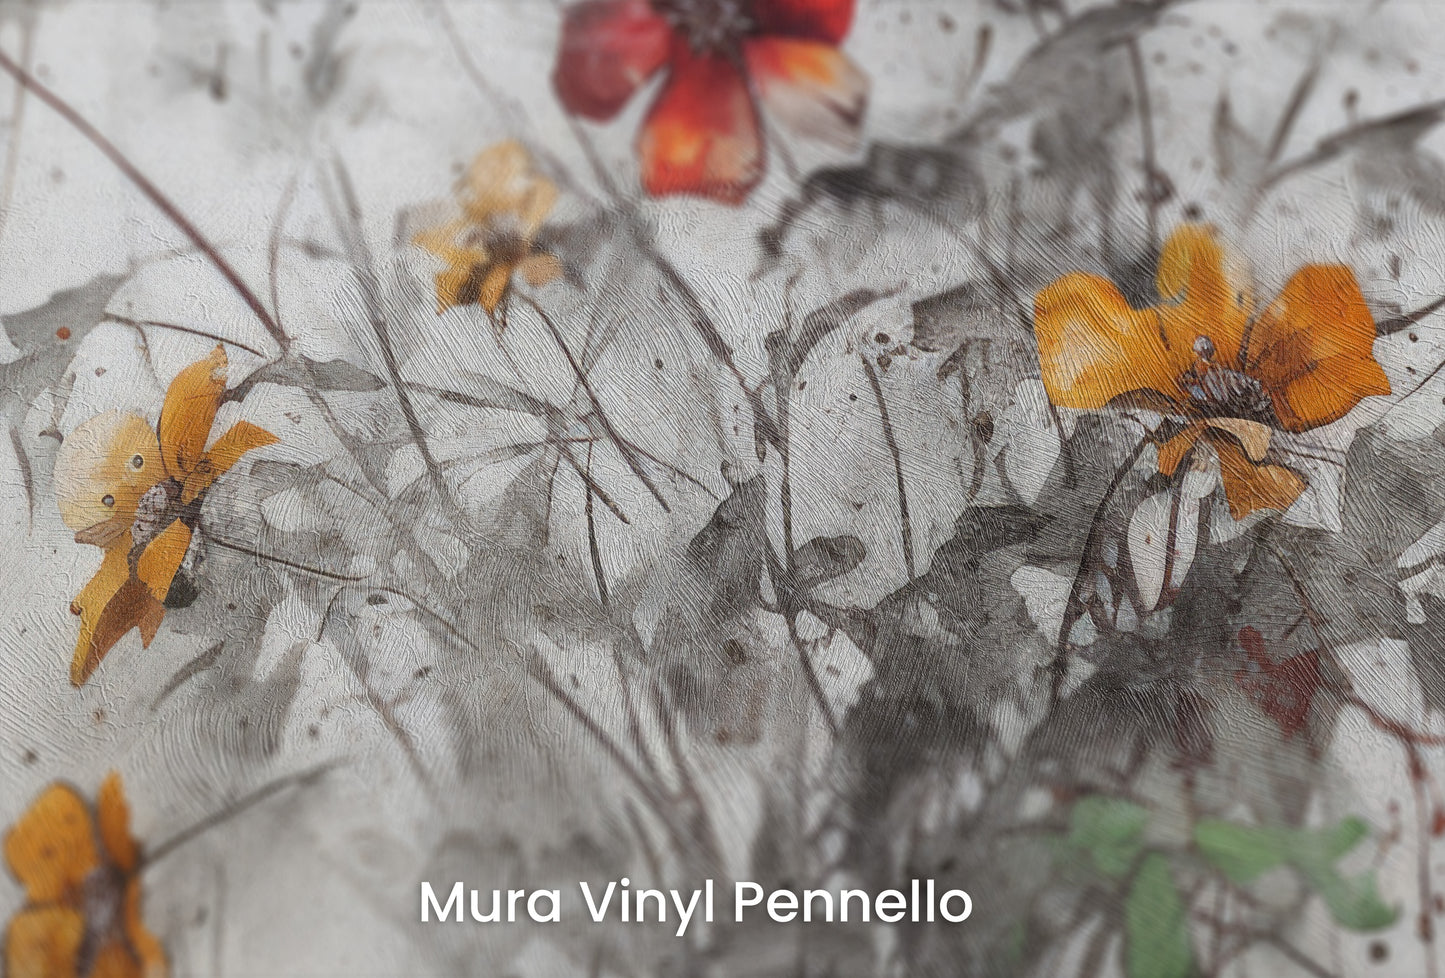 Zbliżenie na artystyczną fototapetę o nazwie RUSTIC BLOOMS OF VITALITY na podłożu Mura Vinyl Pennello - faktura pociągnięć pędzla malarskiego.